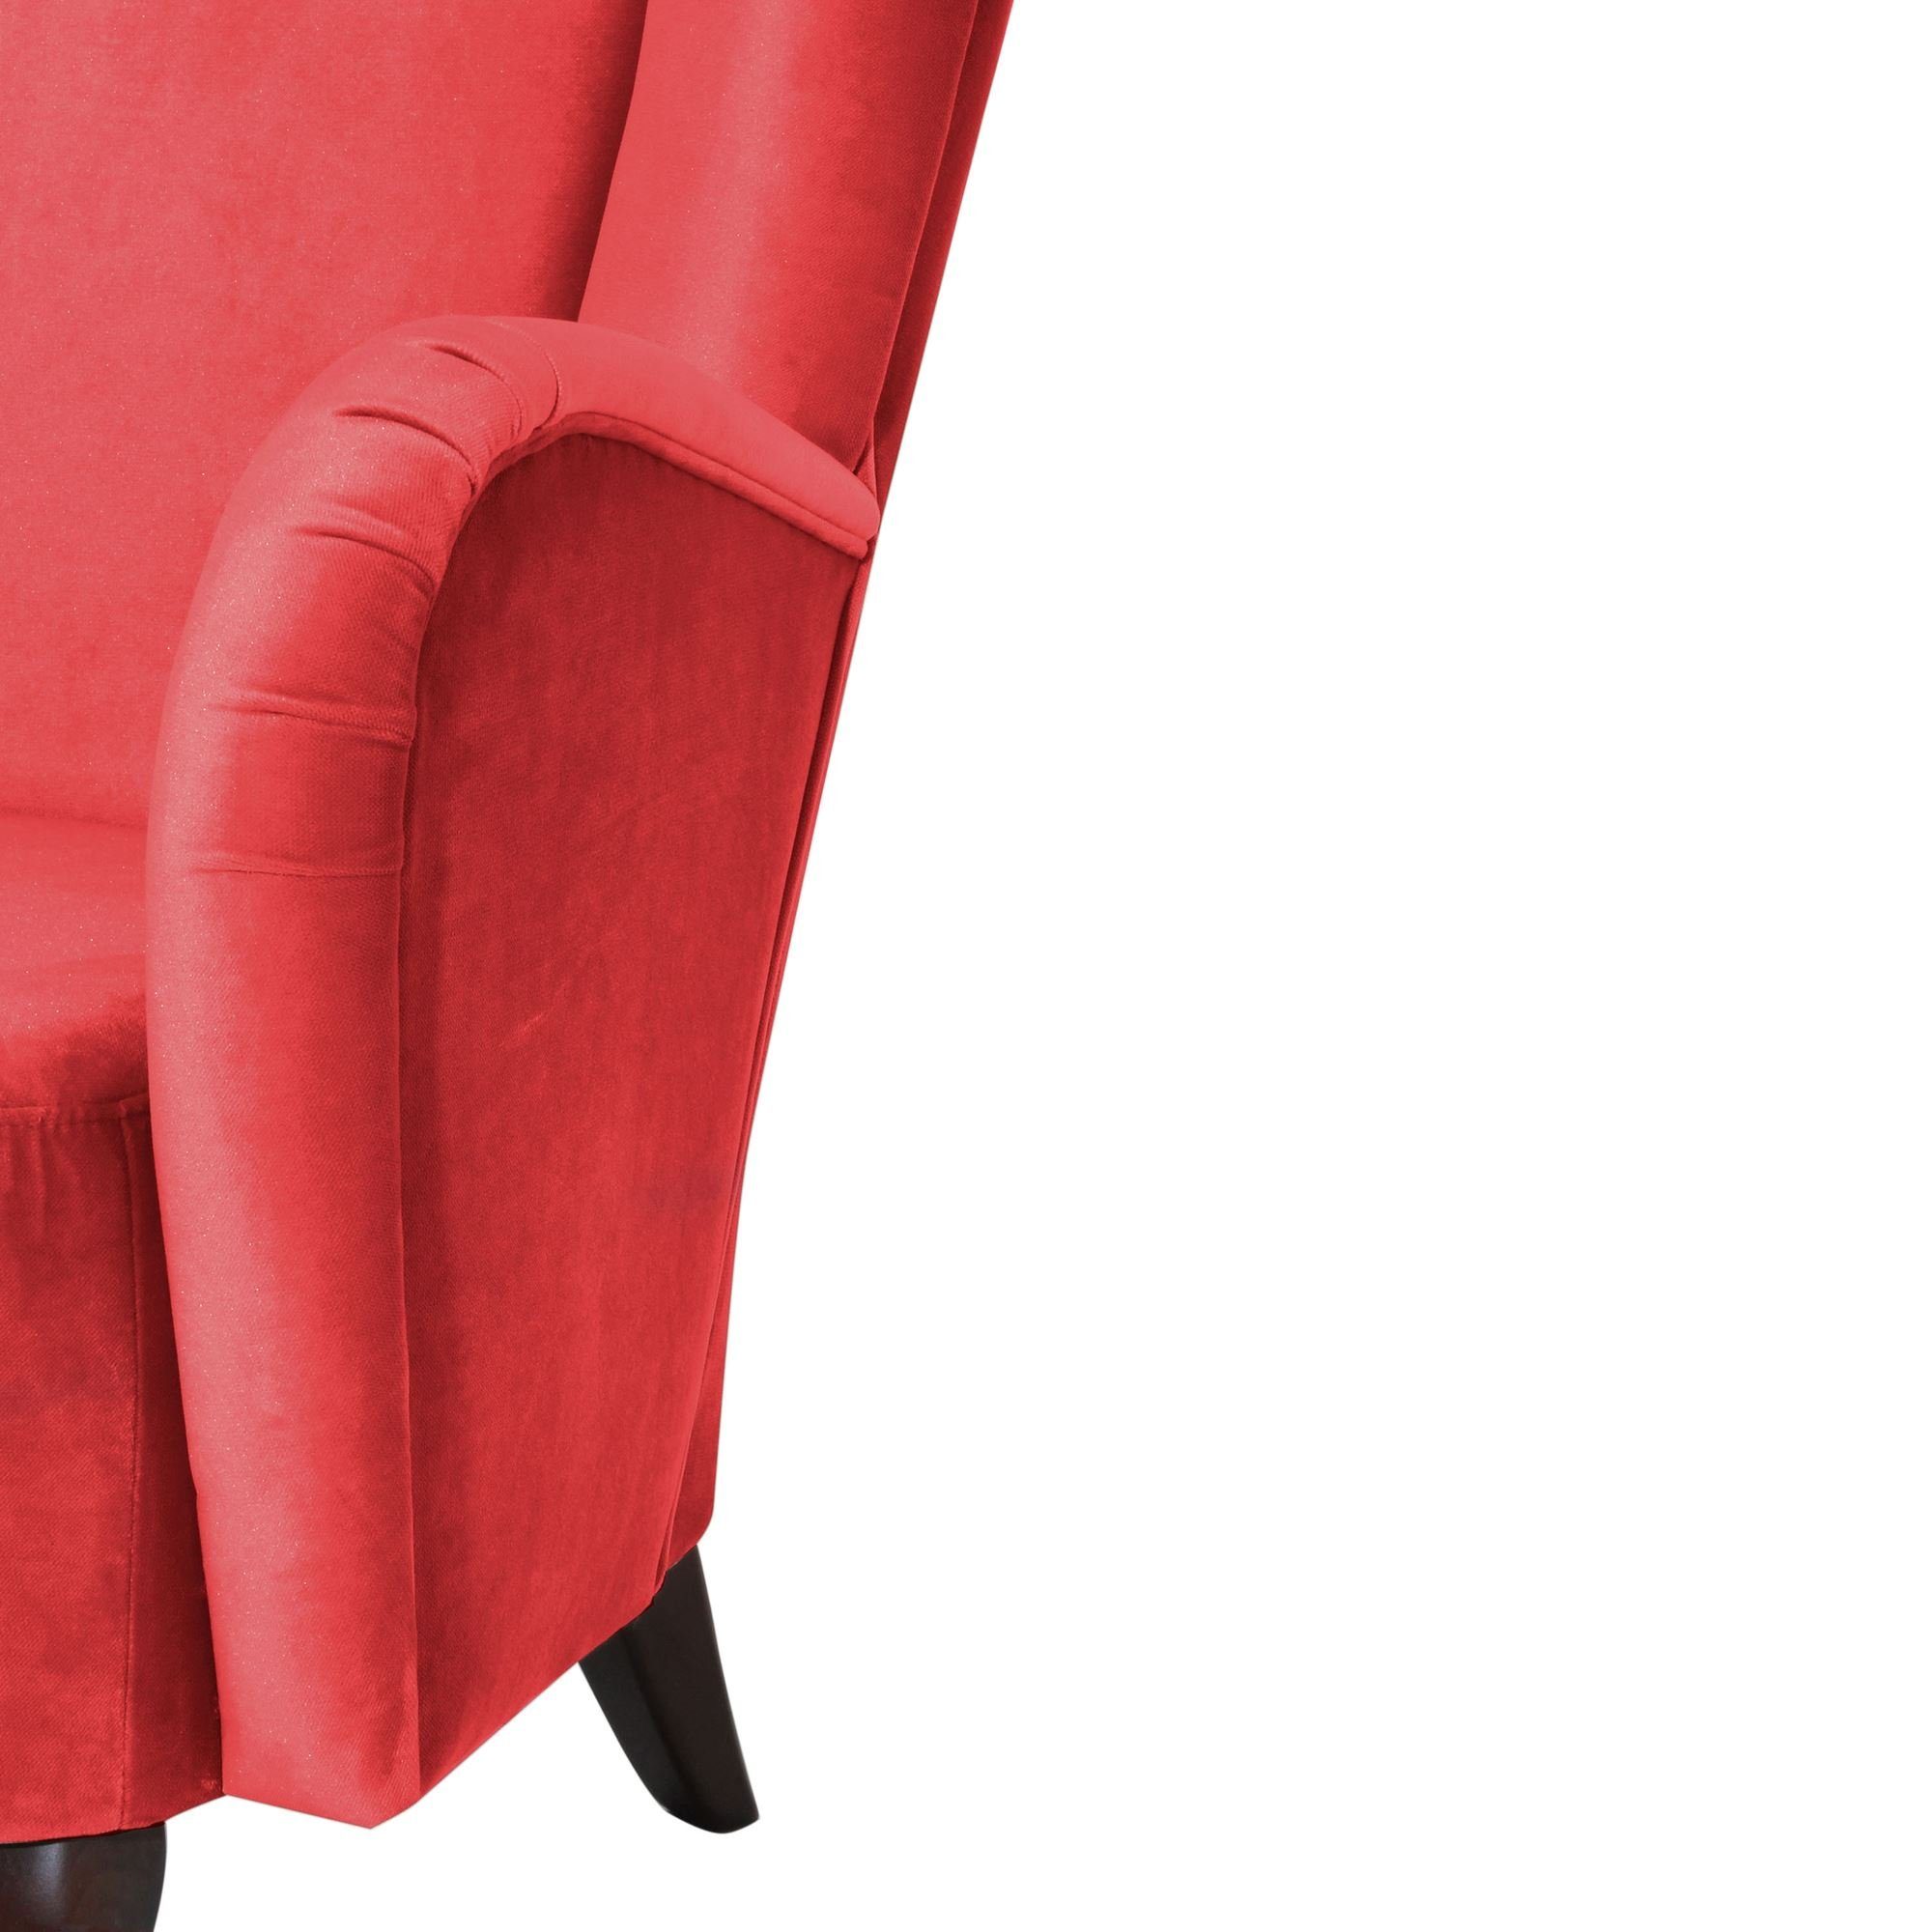 Kailey Sessel verarbeitet,bequemer Sitz aufm 1-St), nussbaum 58 / inkl. hochwertig rot Hochlehnsessel Kessel Samtvelours dunkel (Sparpreis Kostenlosem Bezug Buche Versand,